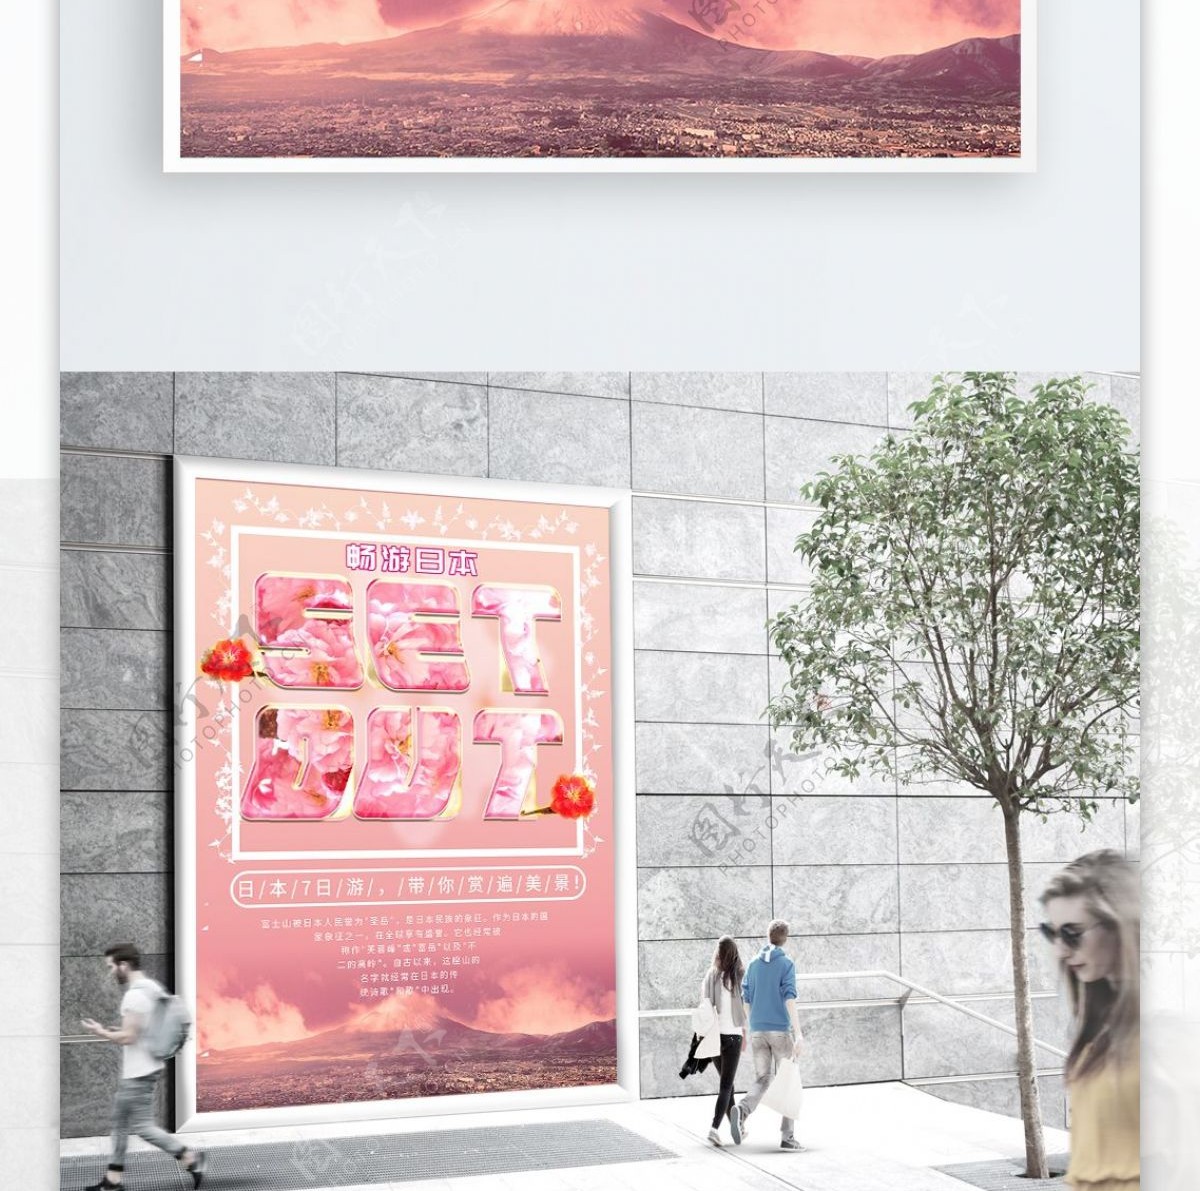 粉色樱花日本旅游创意粗字母微立体主题海报